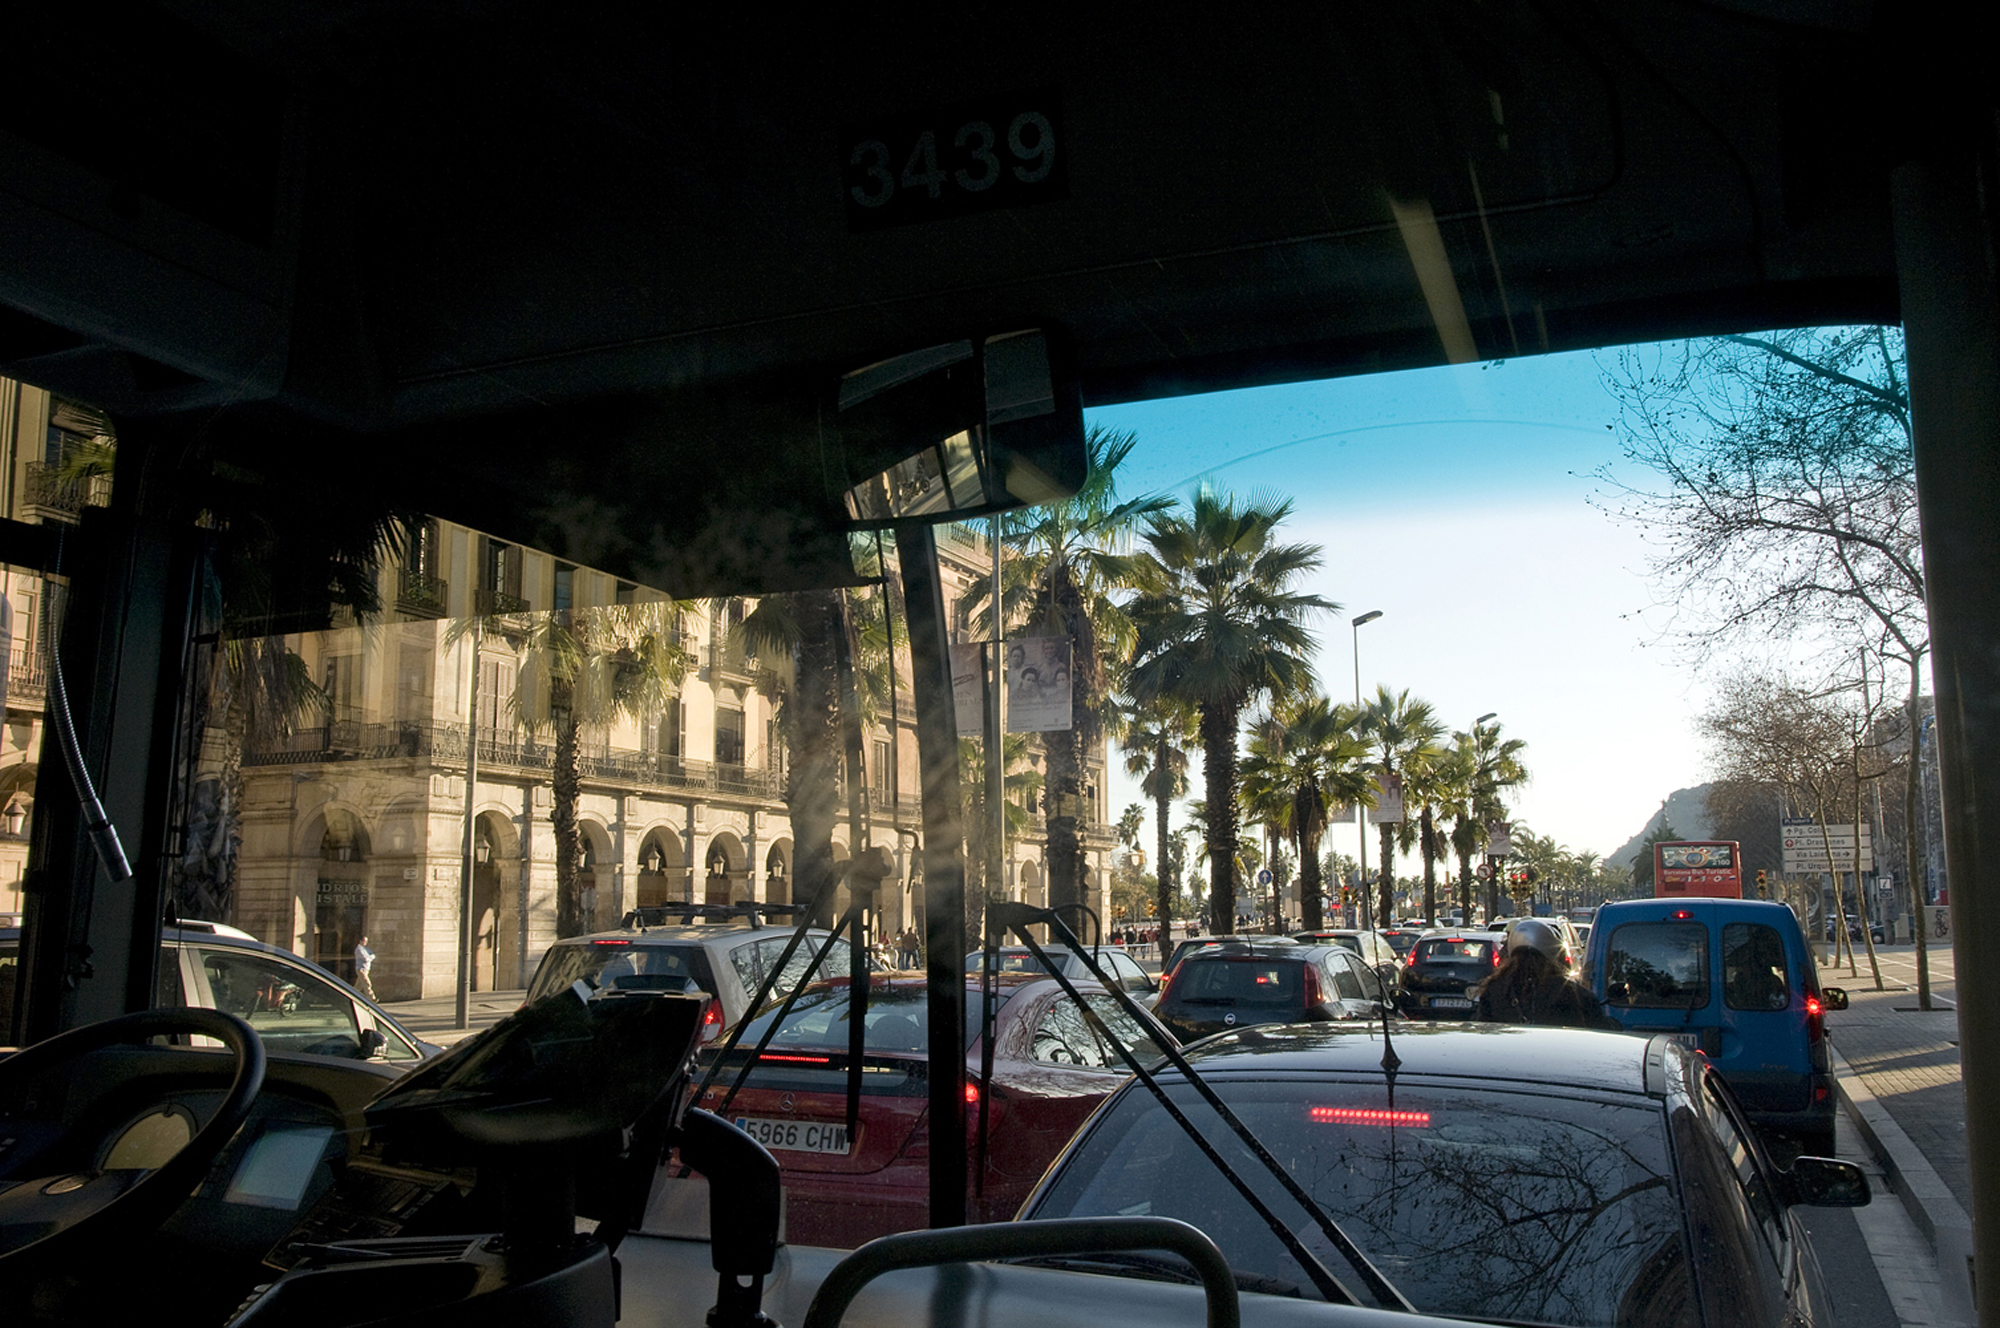 Vista de tráfico urbano desde el interior de un autobús